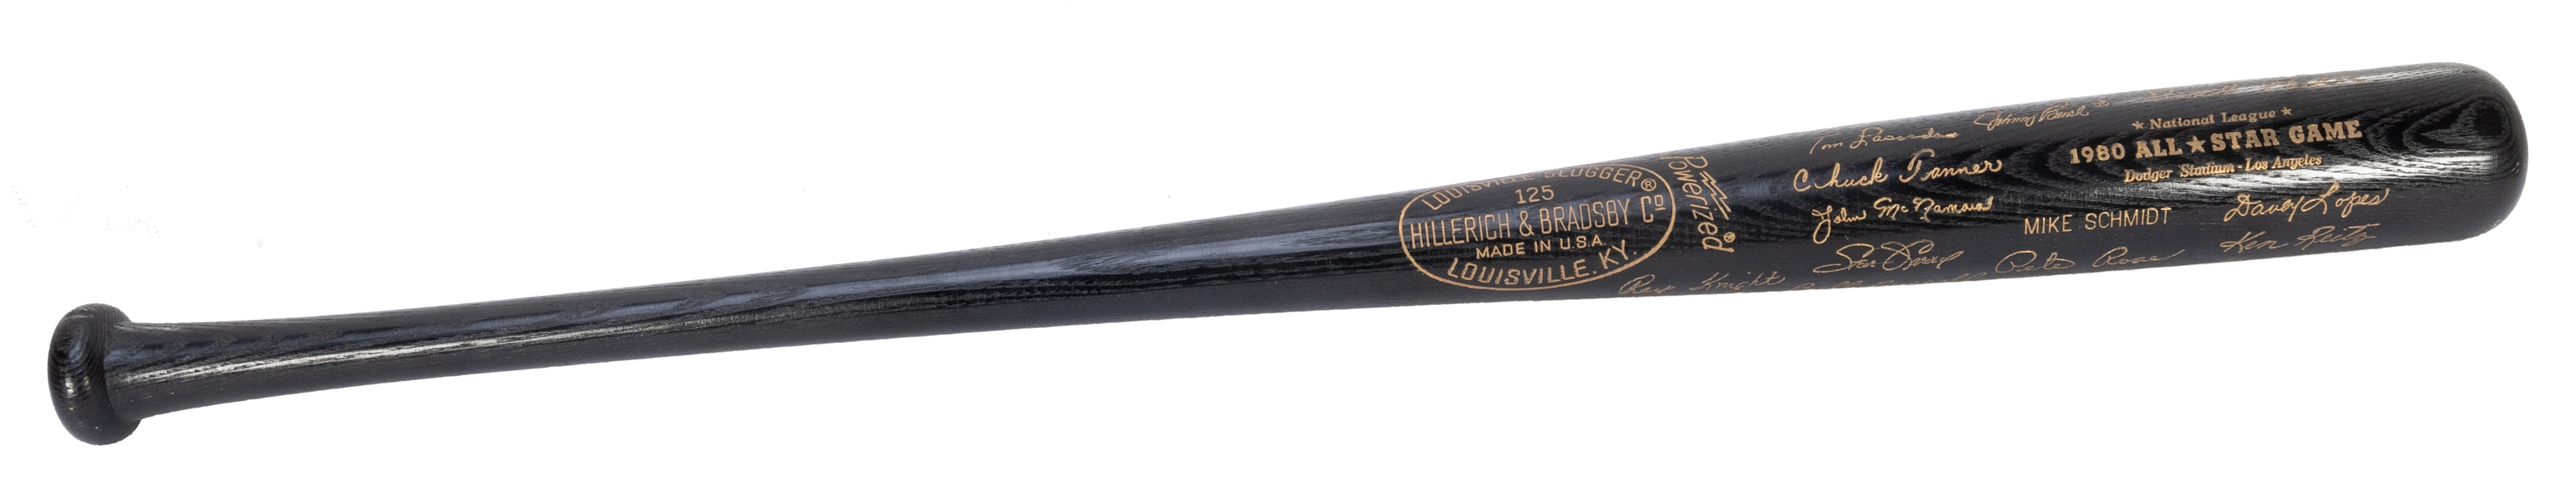  1980 All-Star Game Commemorative Baseball Bat. Hillerich an...